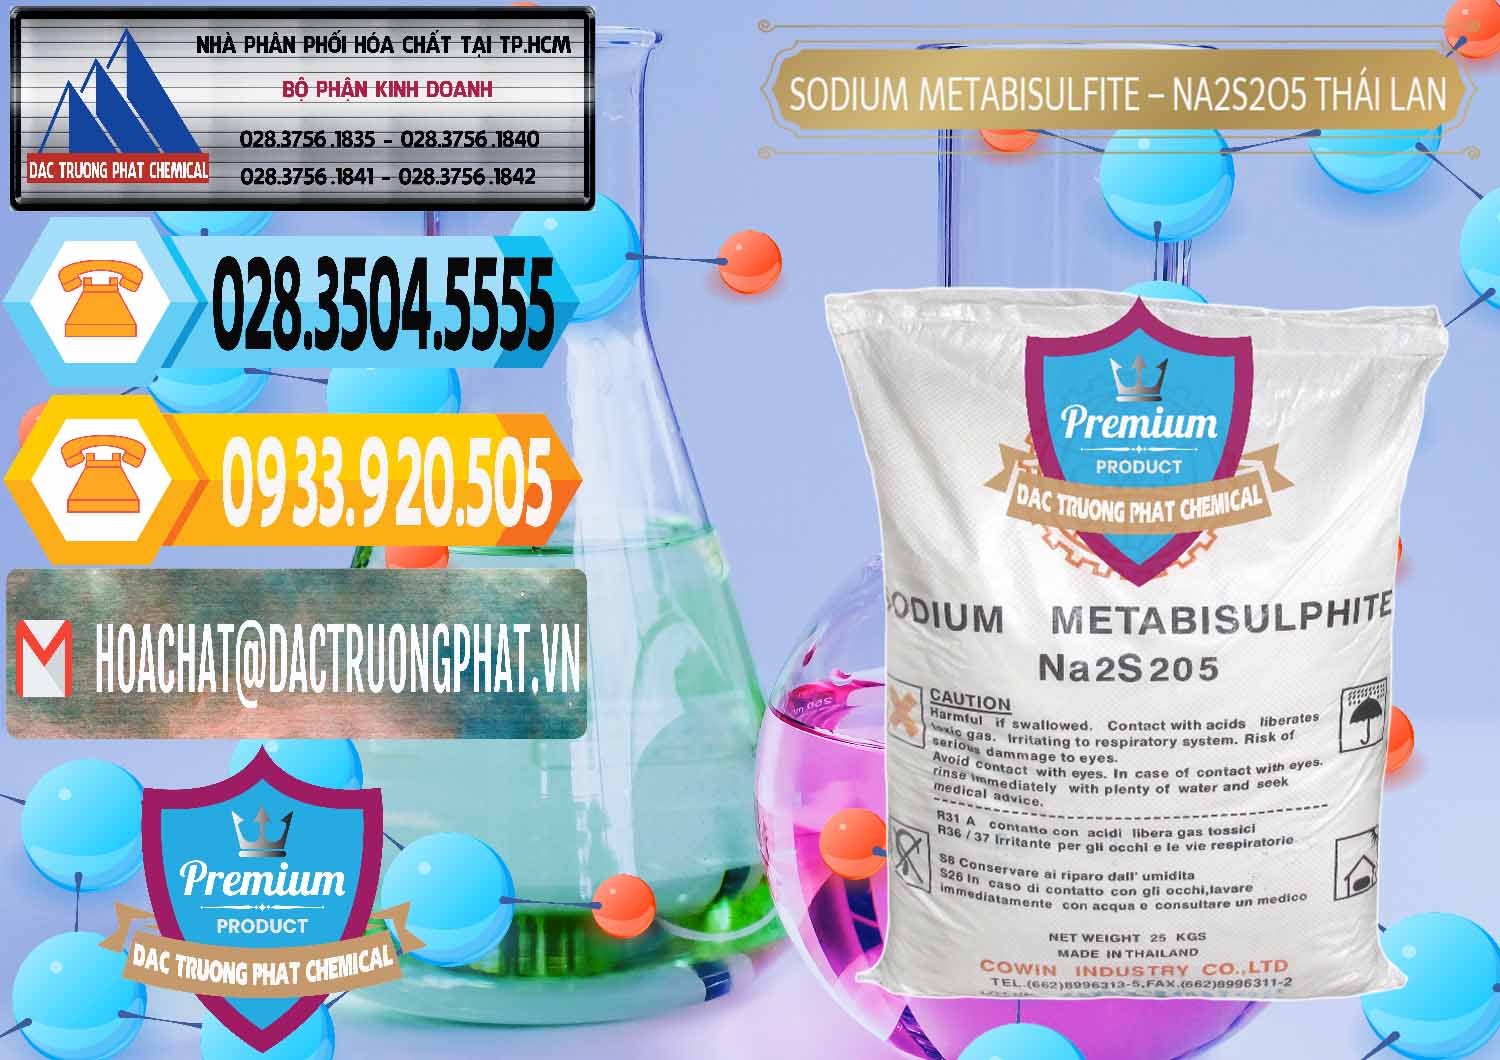 Công ty chuyên bán _ cung cấp Sodium Metabisulfite - NA2S2O5 Thái Lan Cowin - 0145 - Đơn vị cung cấp và phân phối hóa chất tại TP.HCM - hoachattayrua.net